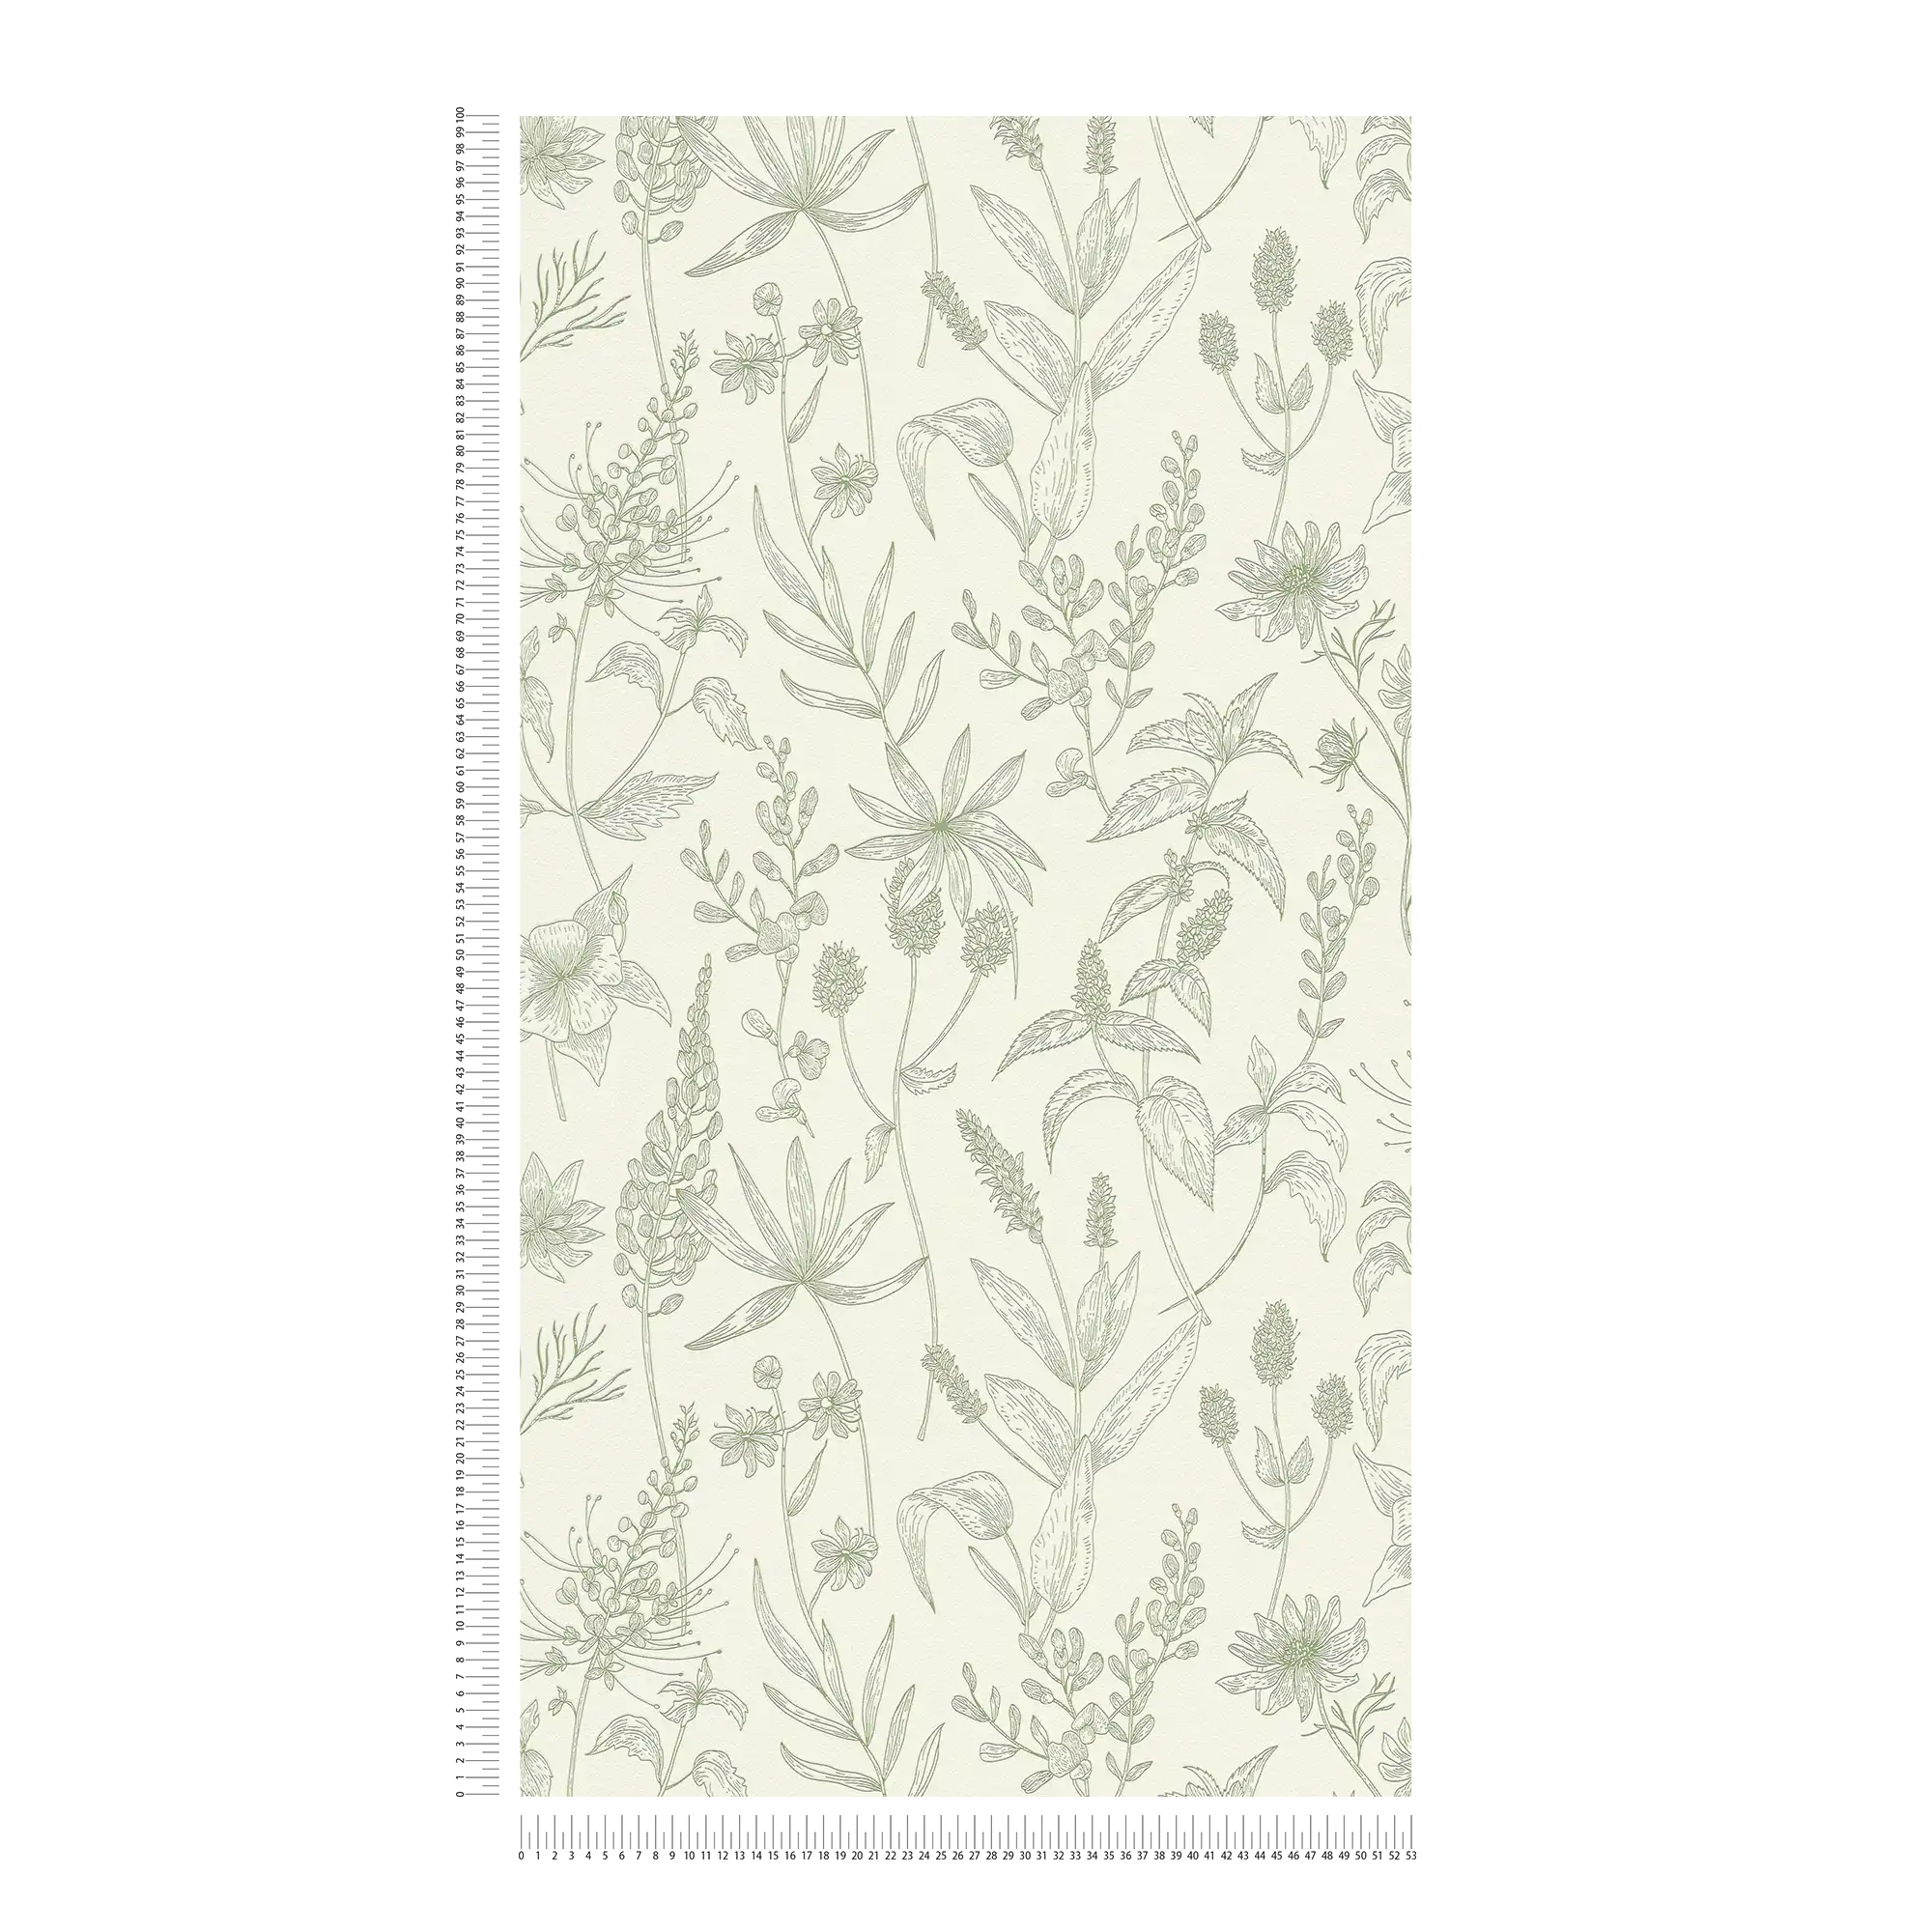             Papier peint intissé avec motif floral et accent métallique - vert, argent, blanc
        